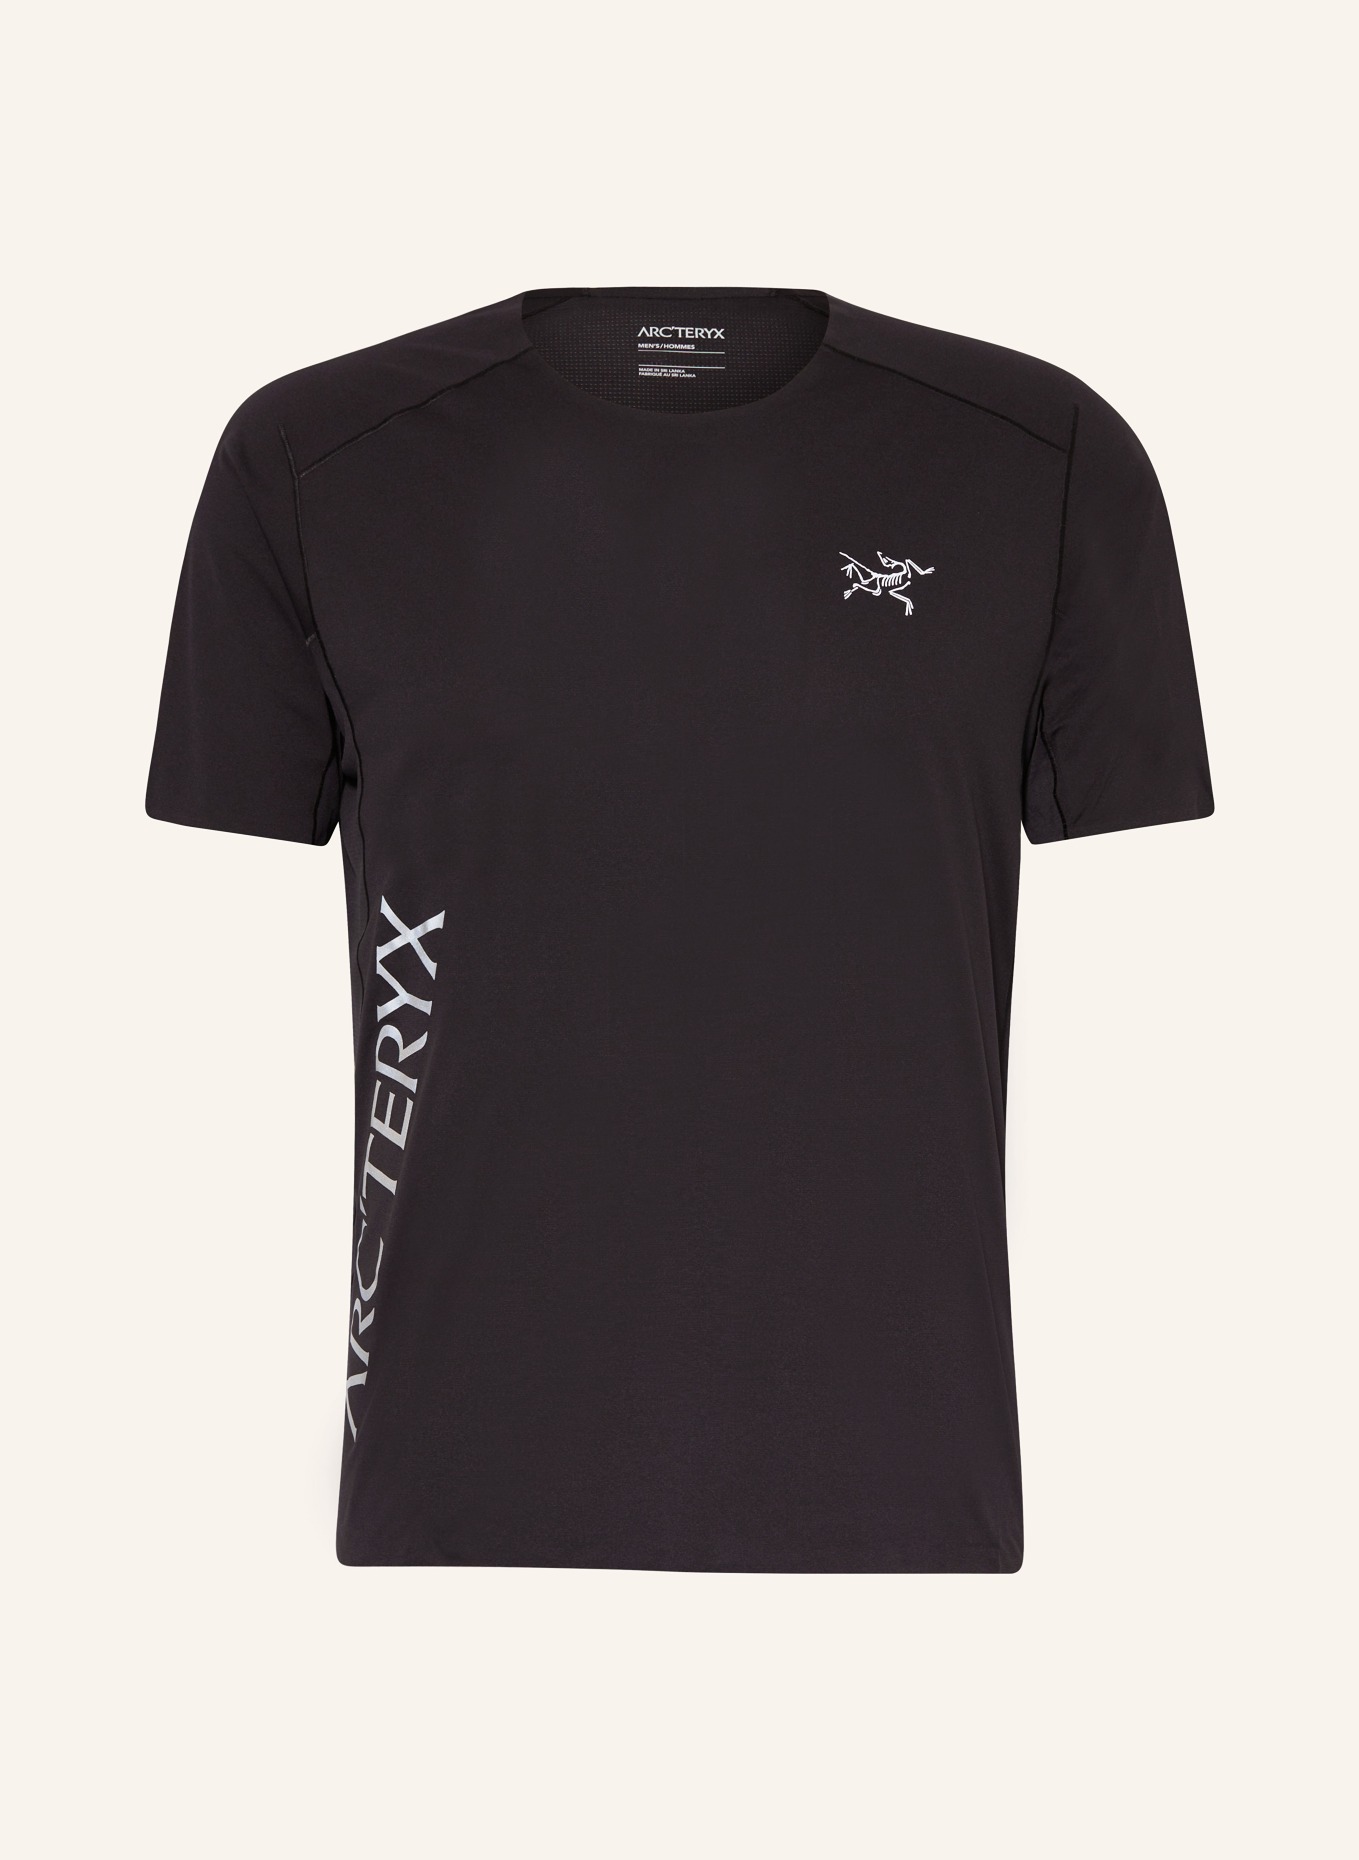 ARC'TERYX T-shirt NORVAN, Color: BLACK (Image 1)